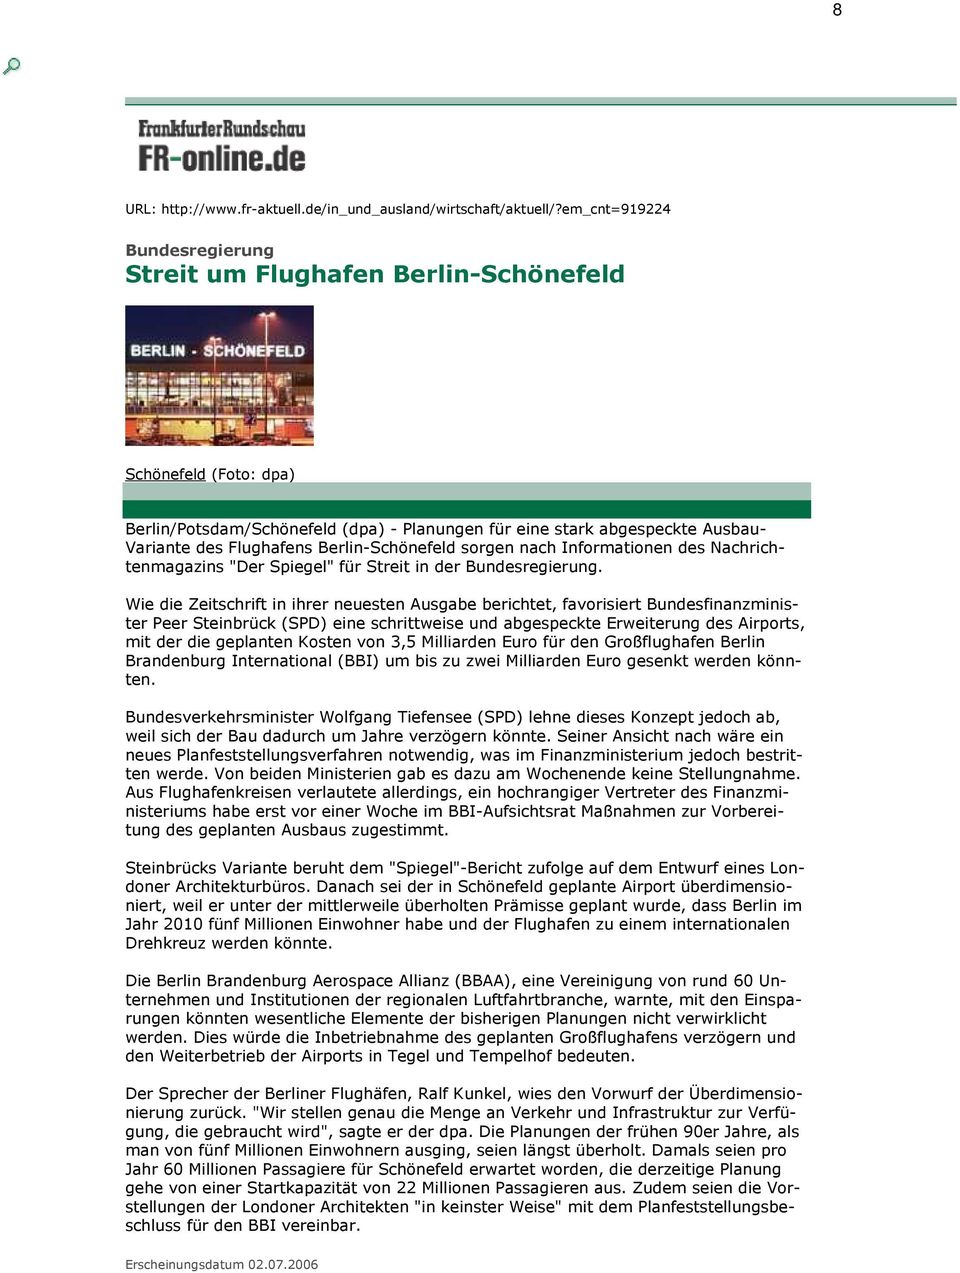 Berlin-Schönefeld sorgen nach Informationen des Nachrichtenmagazins "Der Spiegel" für Streit in der Bundesregierung.